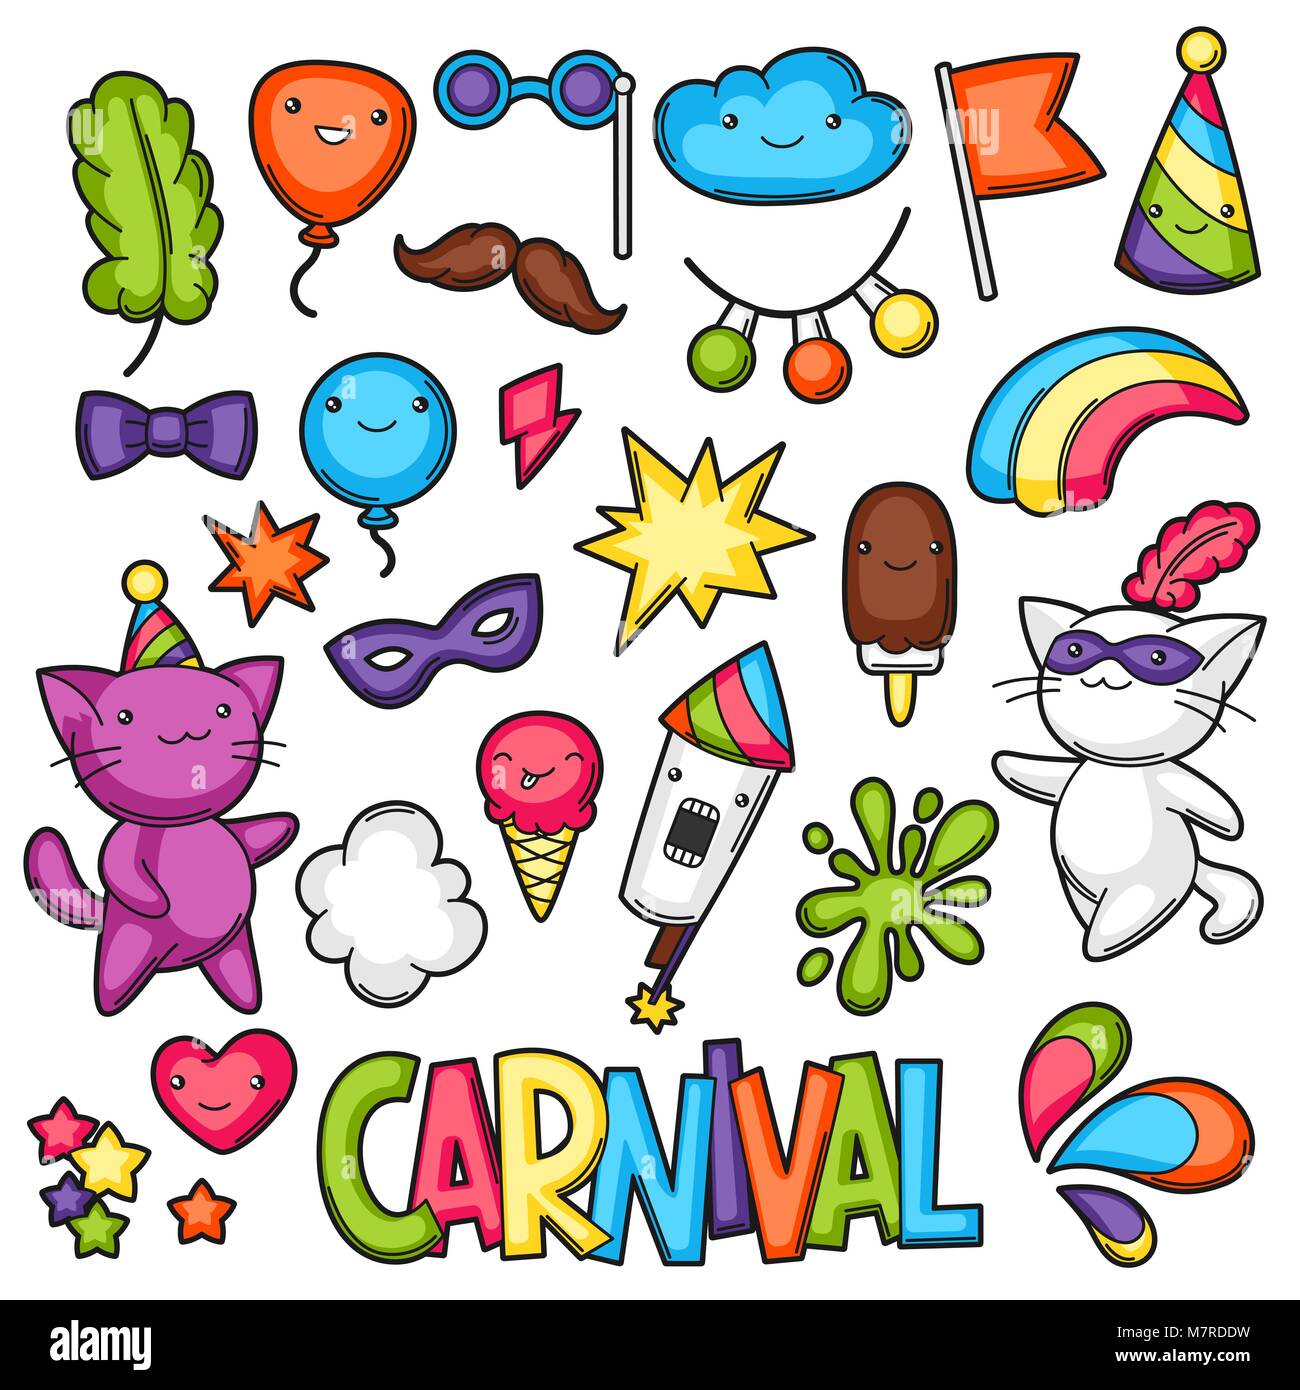 Karneval Party kawaii eingestellt. Süße Katzen, Dekorationen für Feiern, Objekte und Symbole Stock Vektor